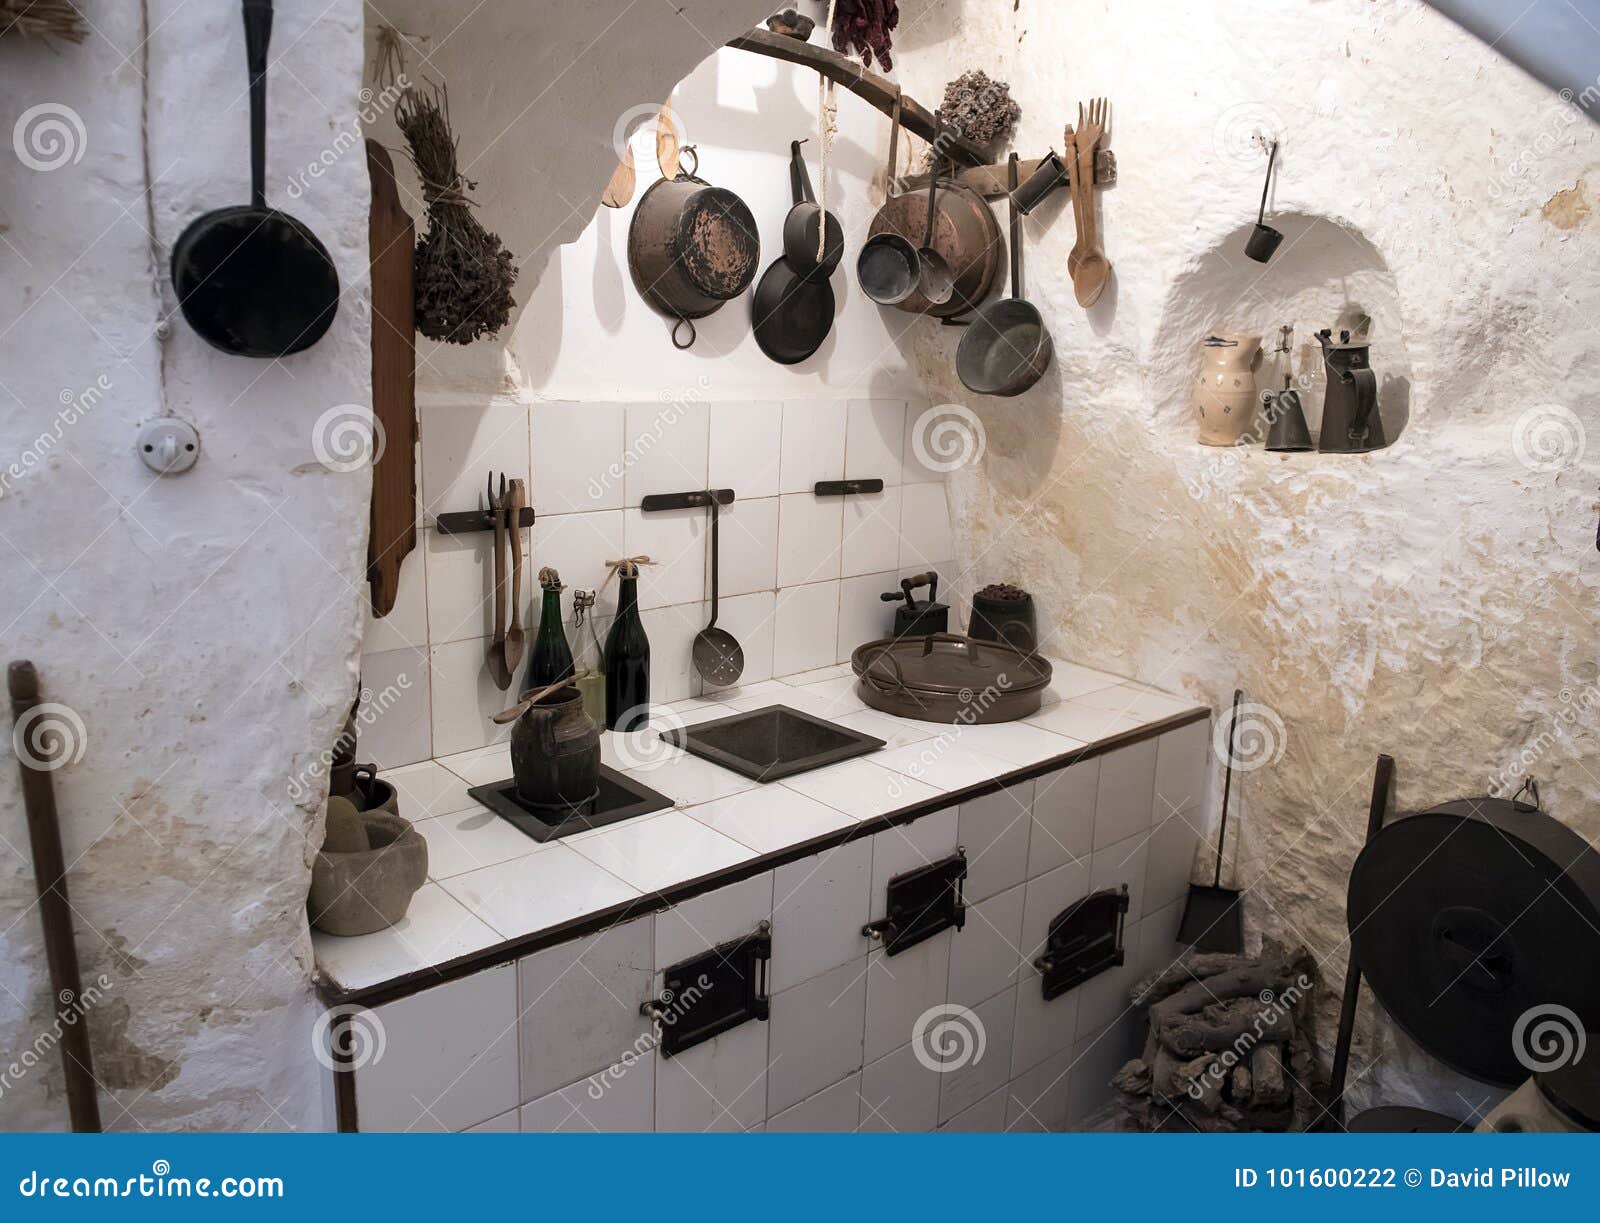 ancient kitchen inside casa grotta di vico solitario matera, itay